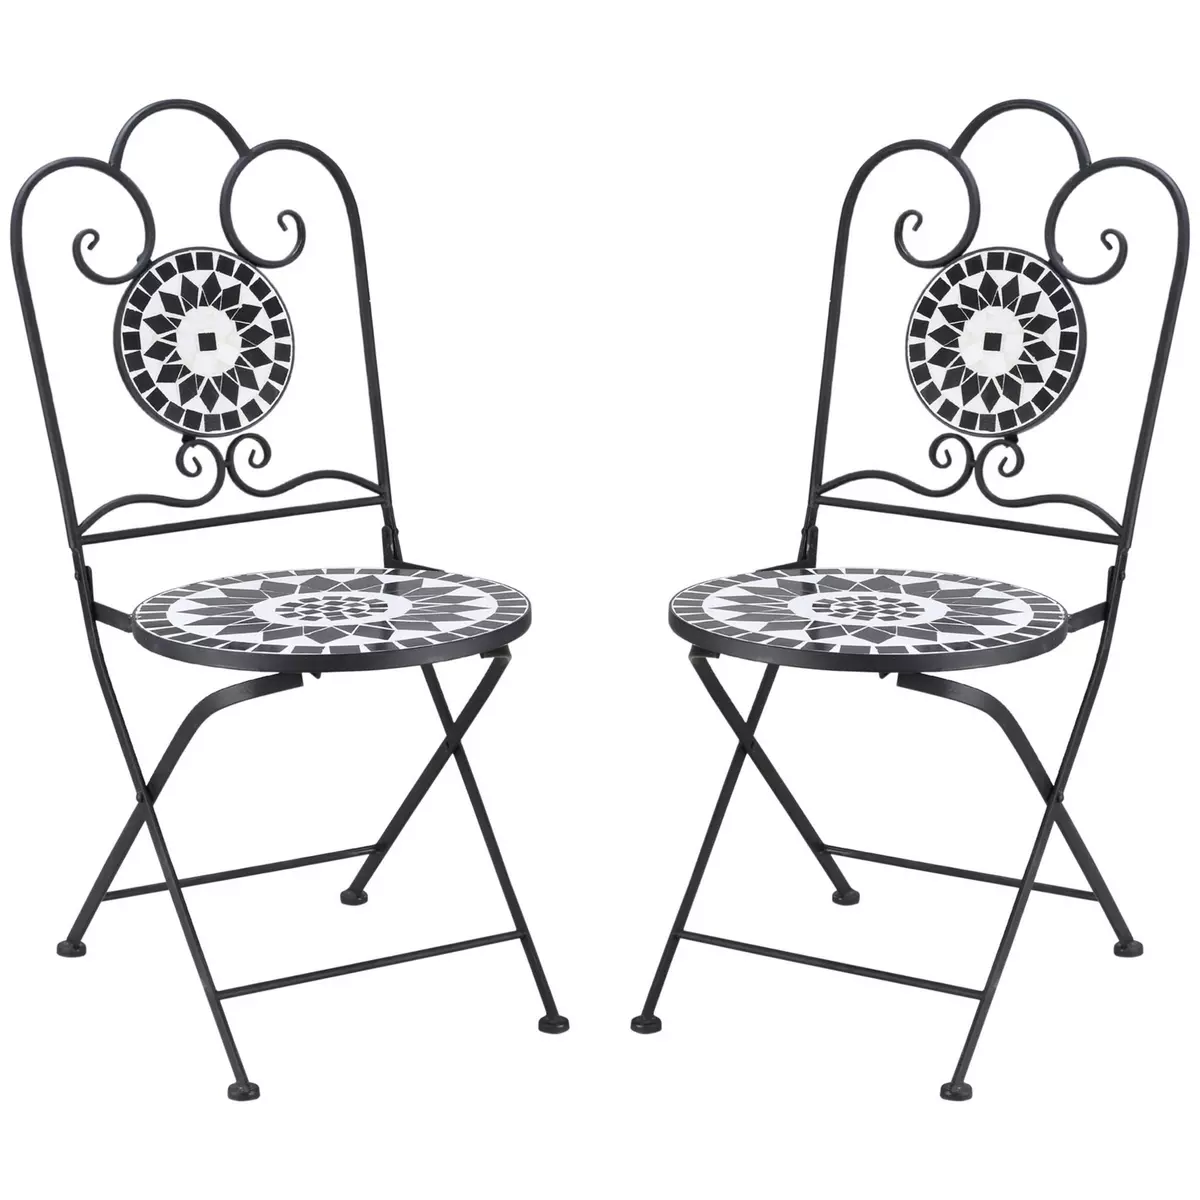 OUTSUNNY Lot de 2 chaises de jardin pliables style fer forgé mosaïque céramique motif rose des vents métal époxy noir blanc